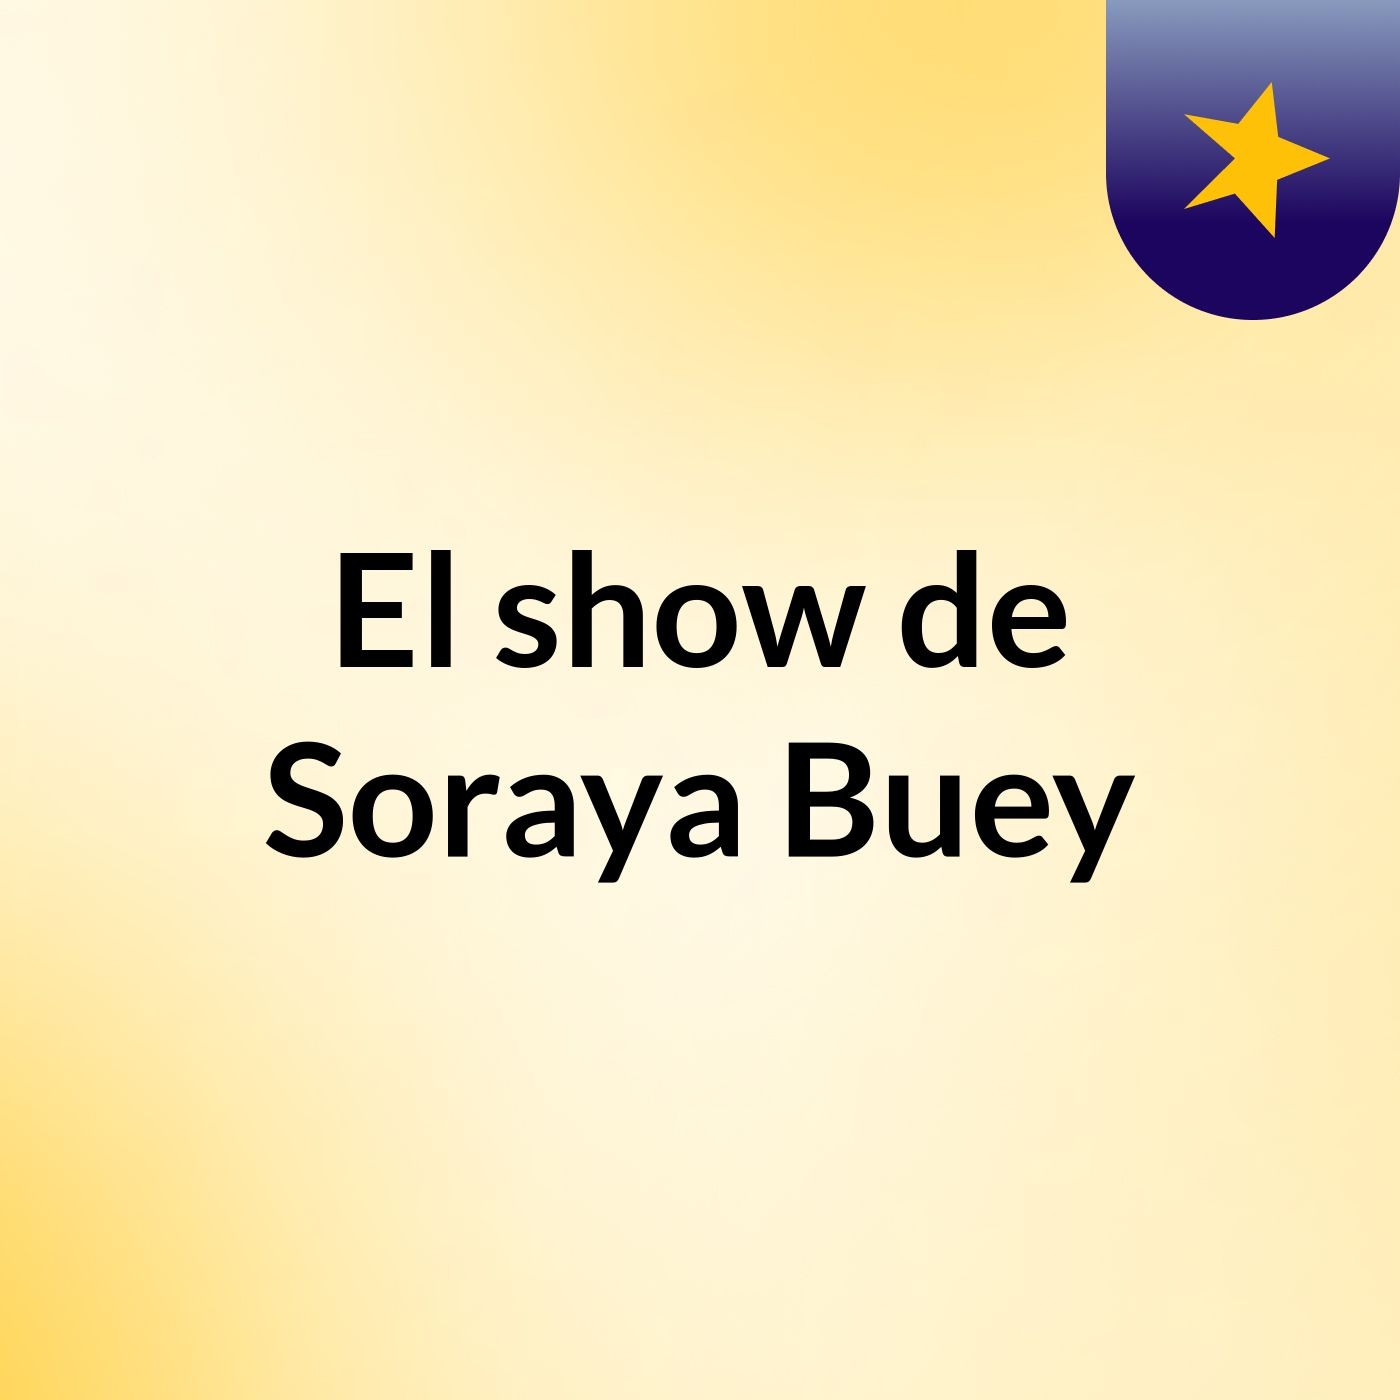 El show de Soraya Buey